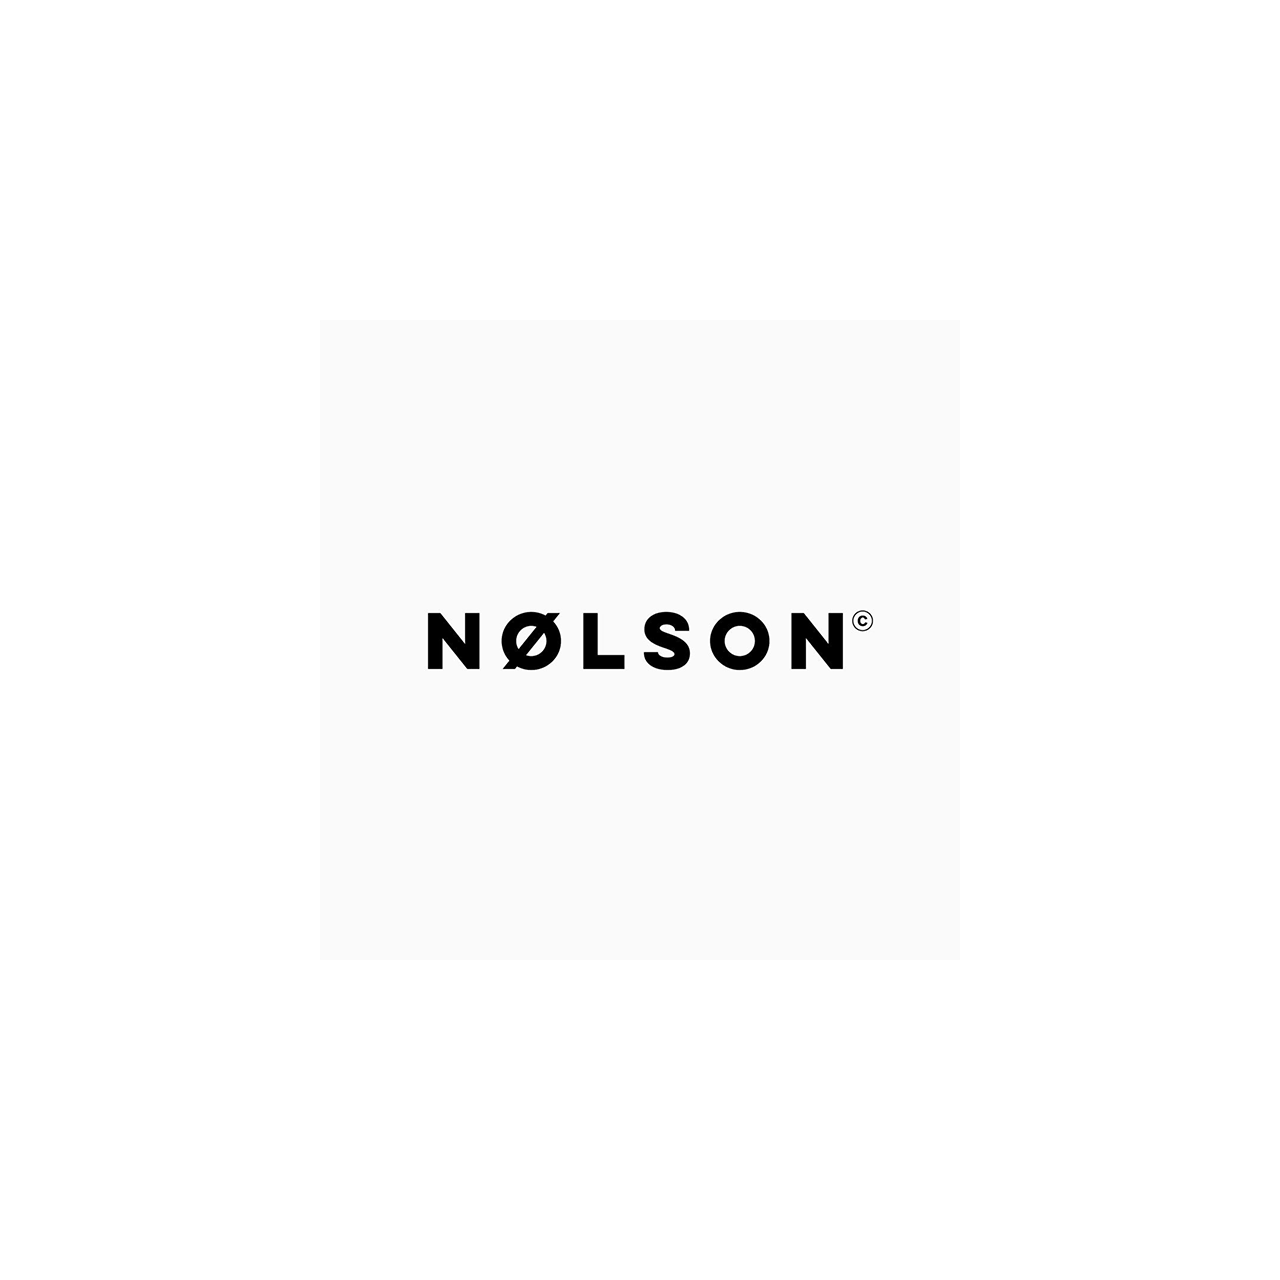 Nolson logo